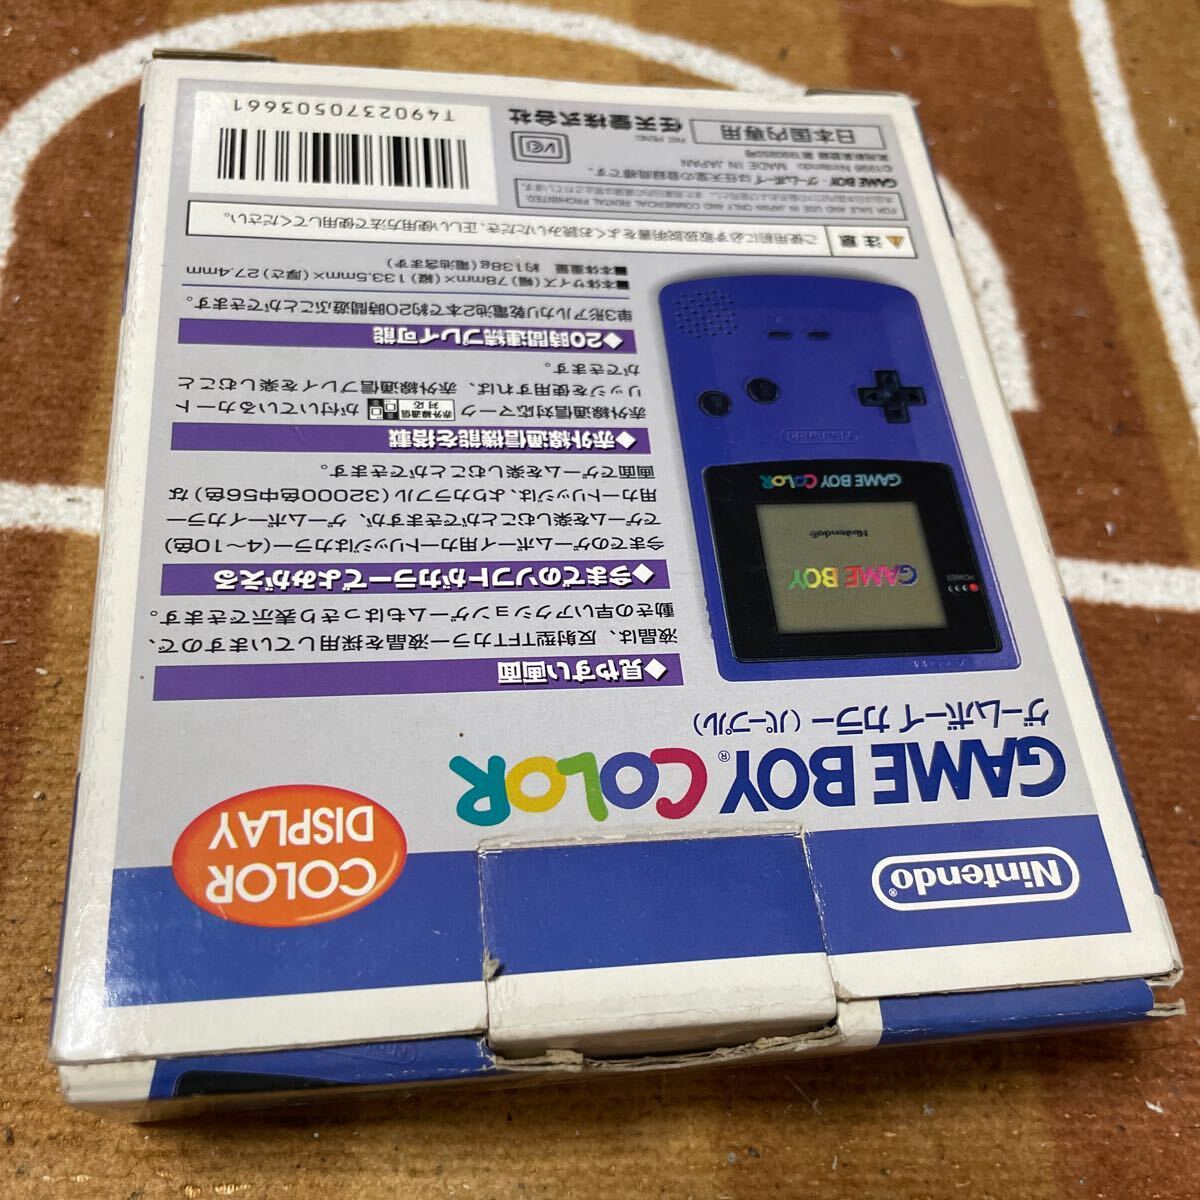  рабочее состояние подтверждено корпус прекрасный товар серийный номер совпадение Game Boy цвет GBC GAMEBOY COLOR лиловый коробка инструкция есть Nintendo CGB-001